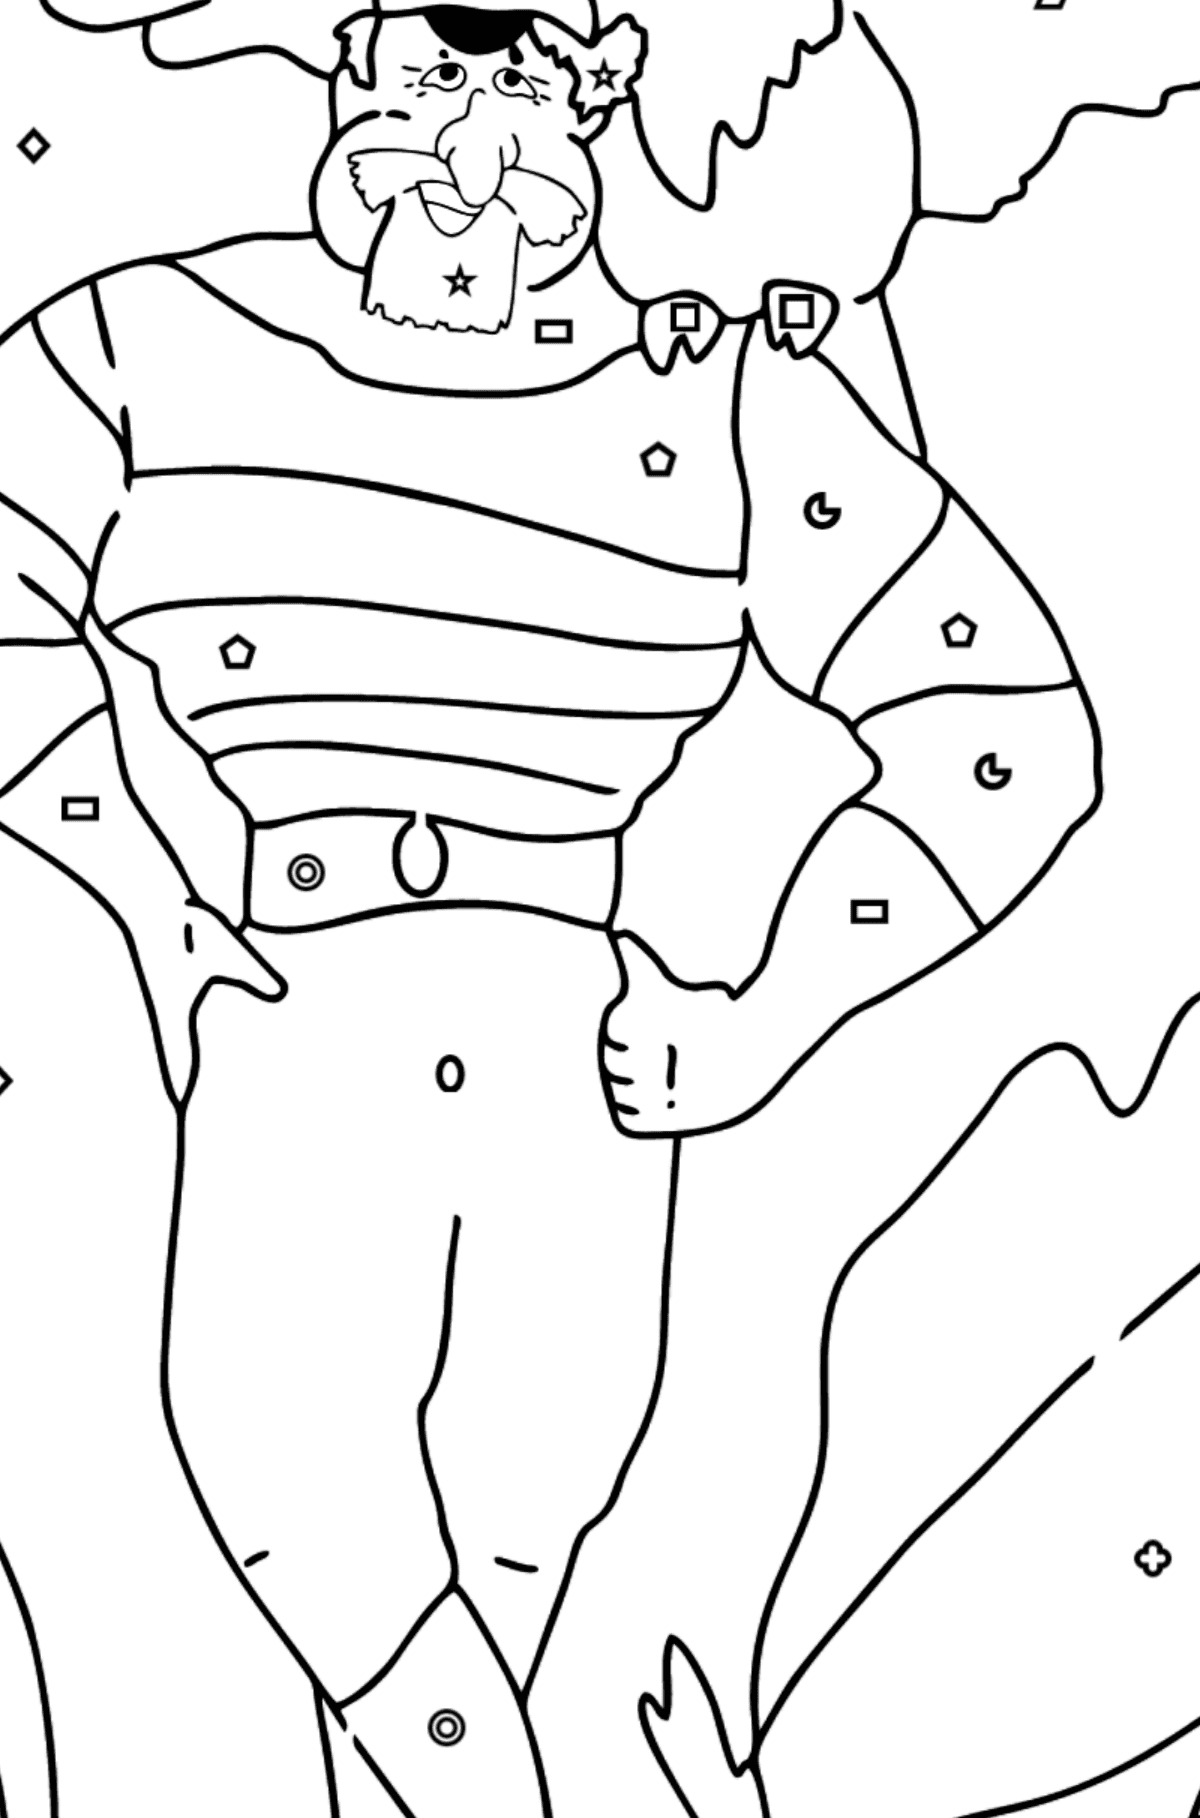 Coloriage - Un pirate avec un joli perroquet sur l'épaule - Coloriage par Formes Géométriques pour les Enfants